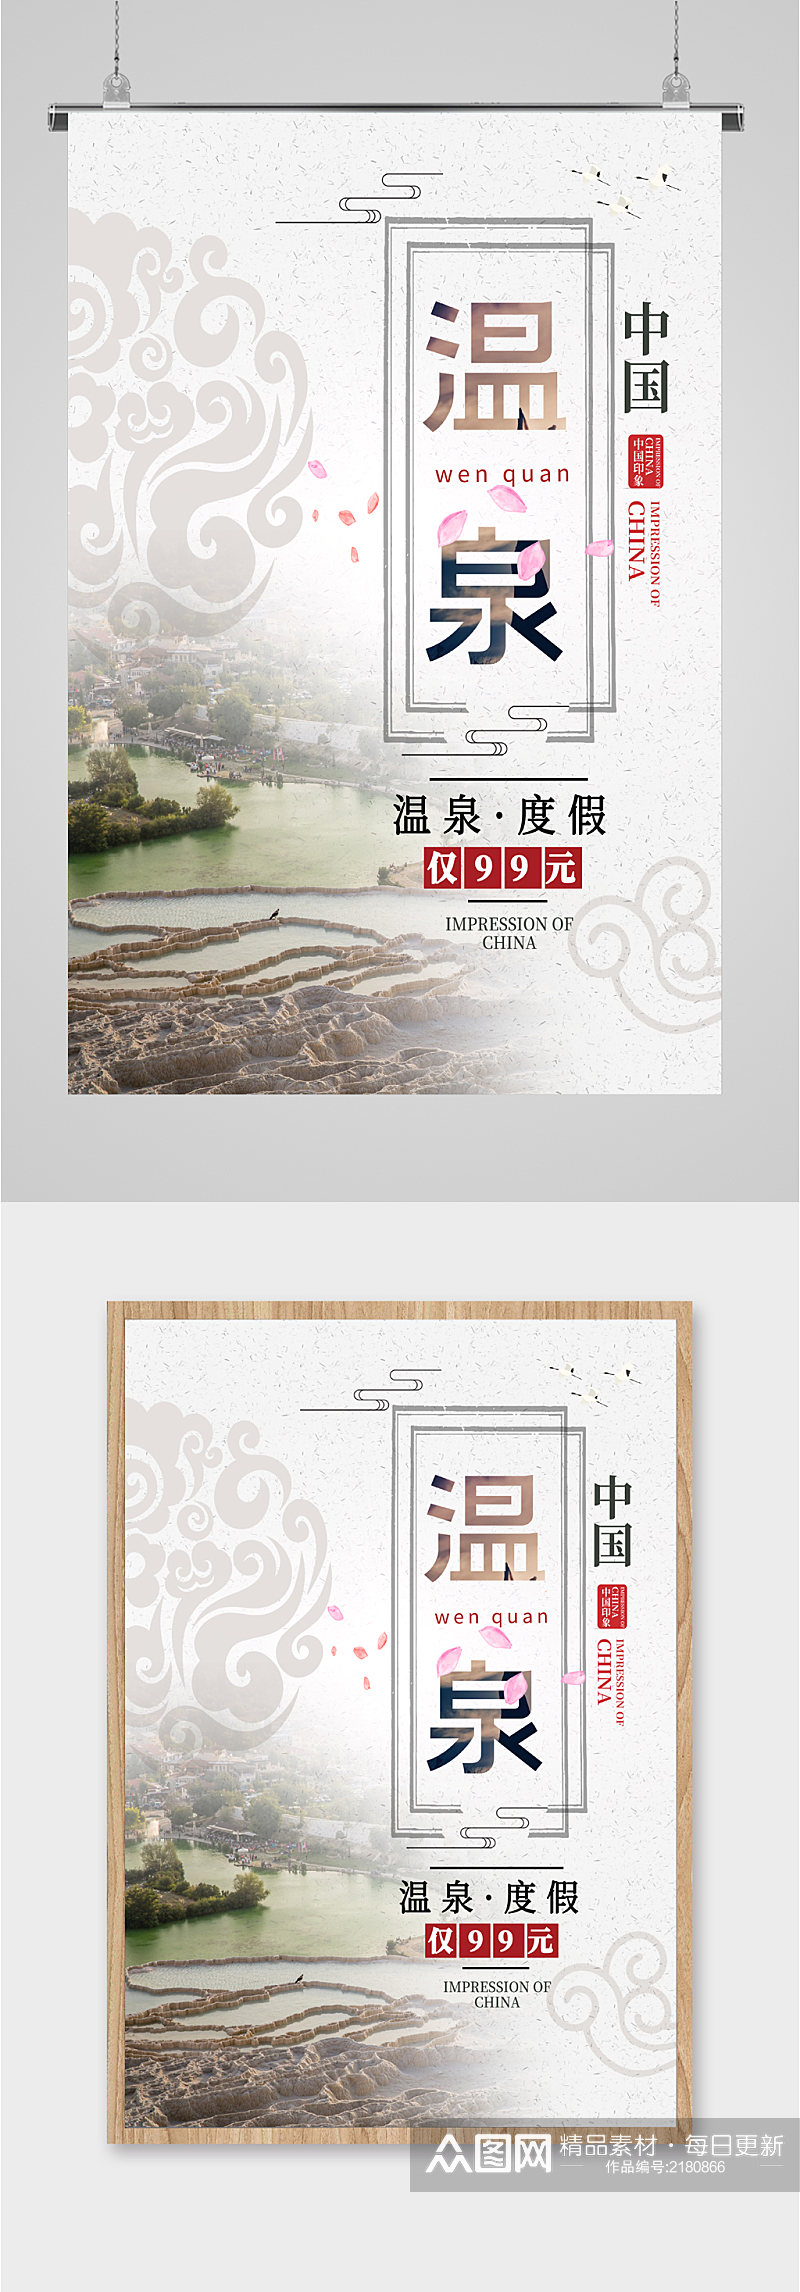 中国温泉度假旅游海报素材